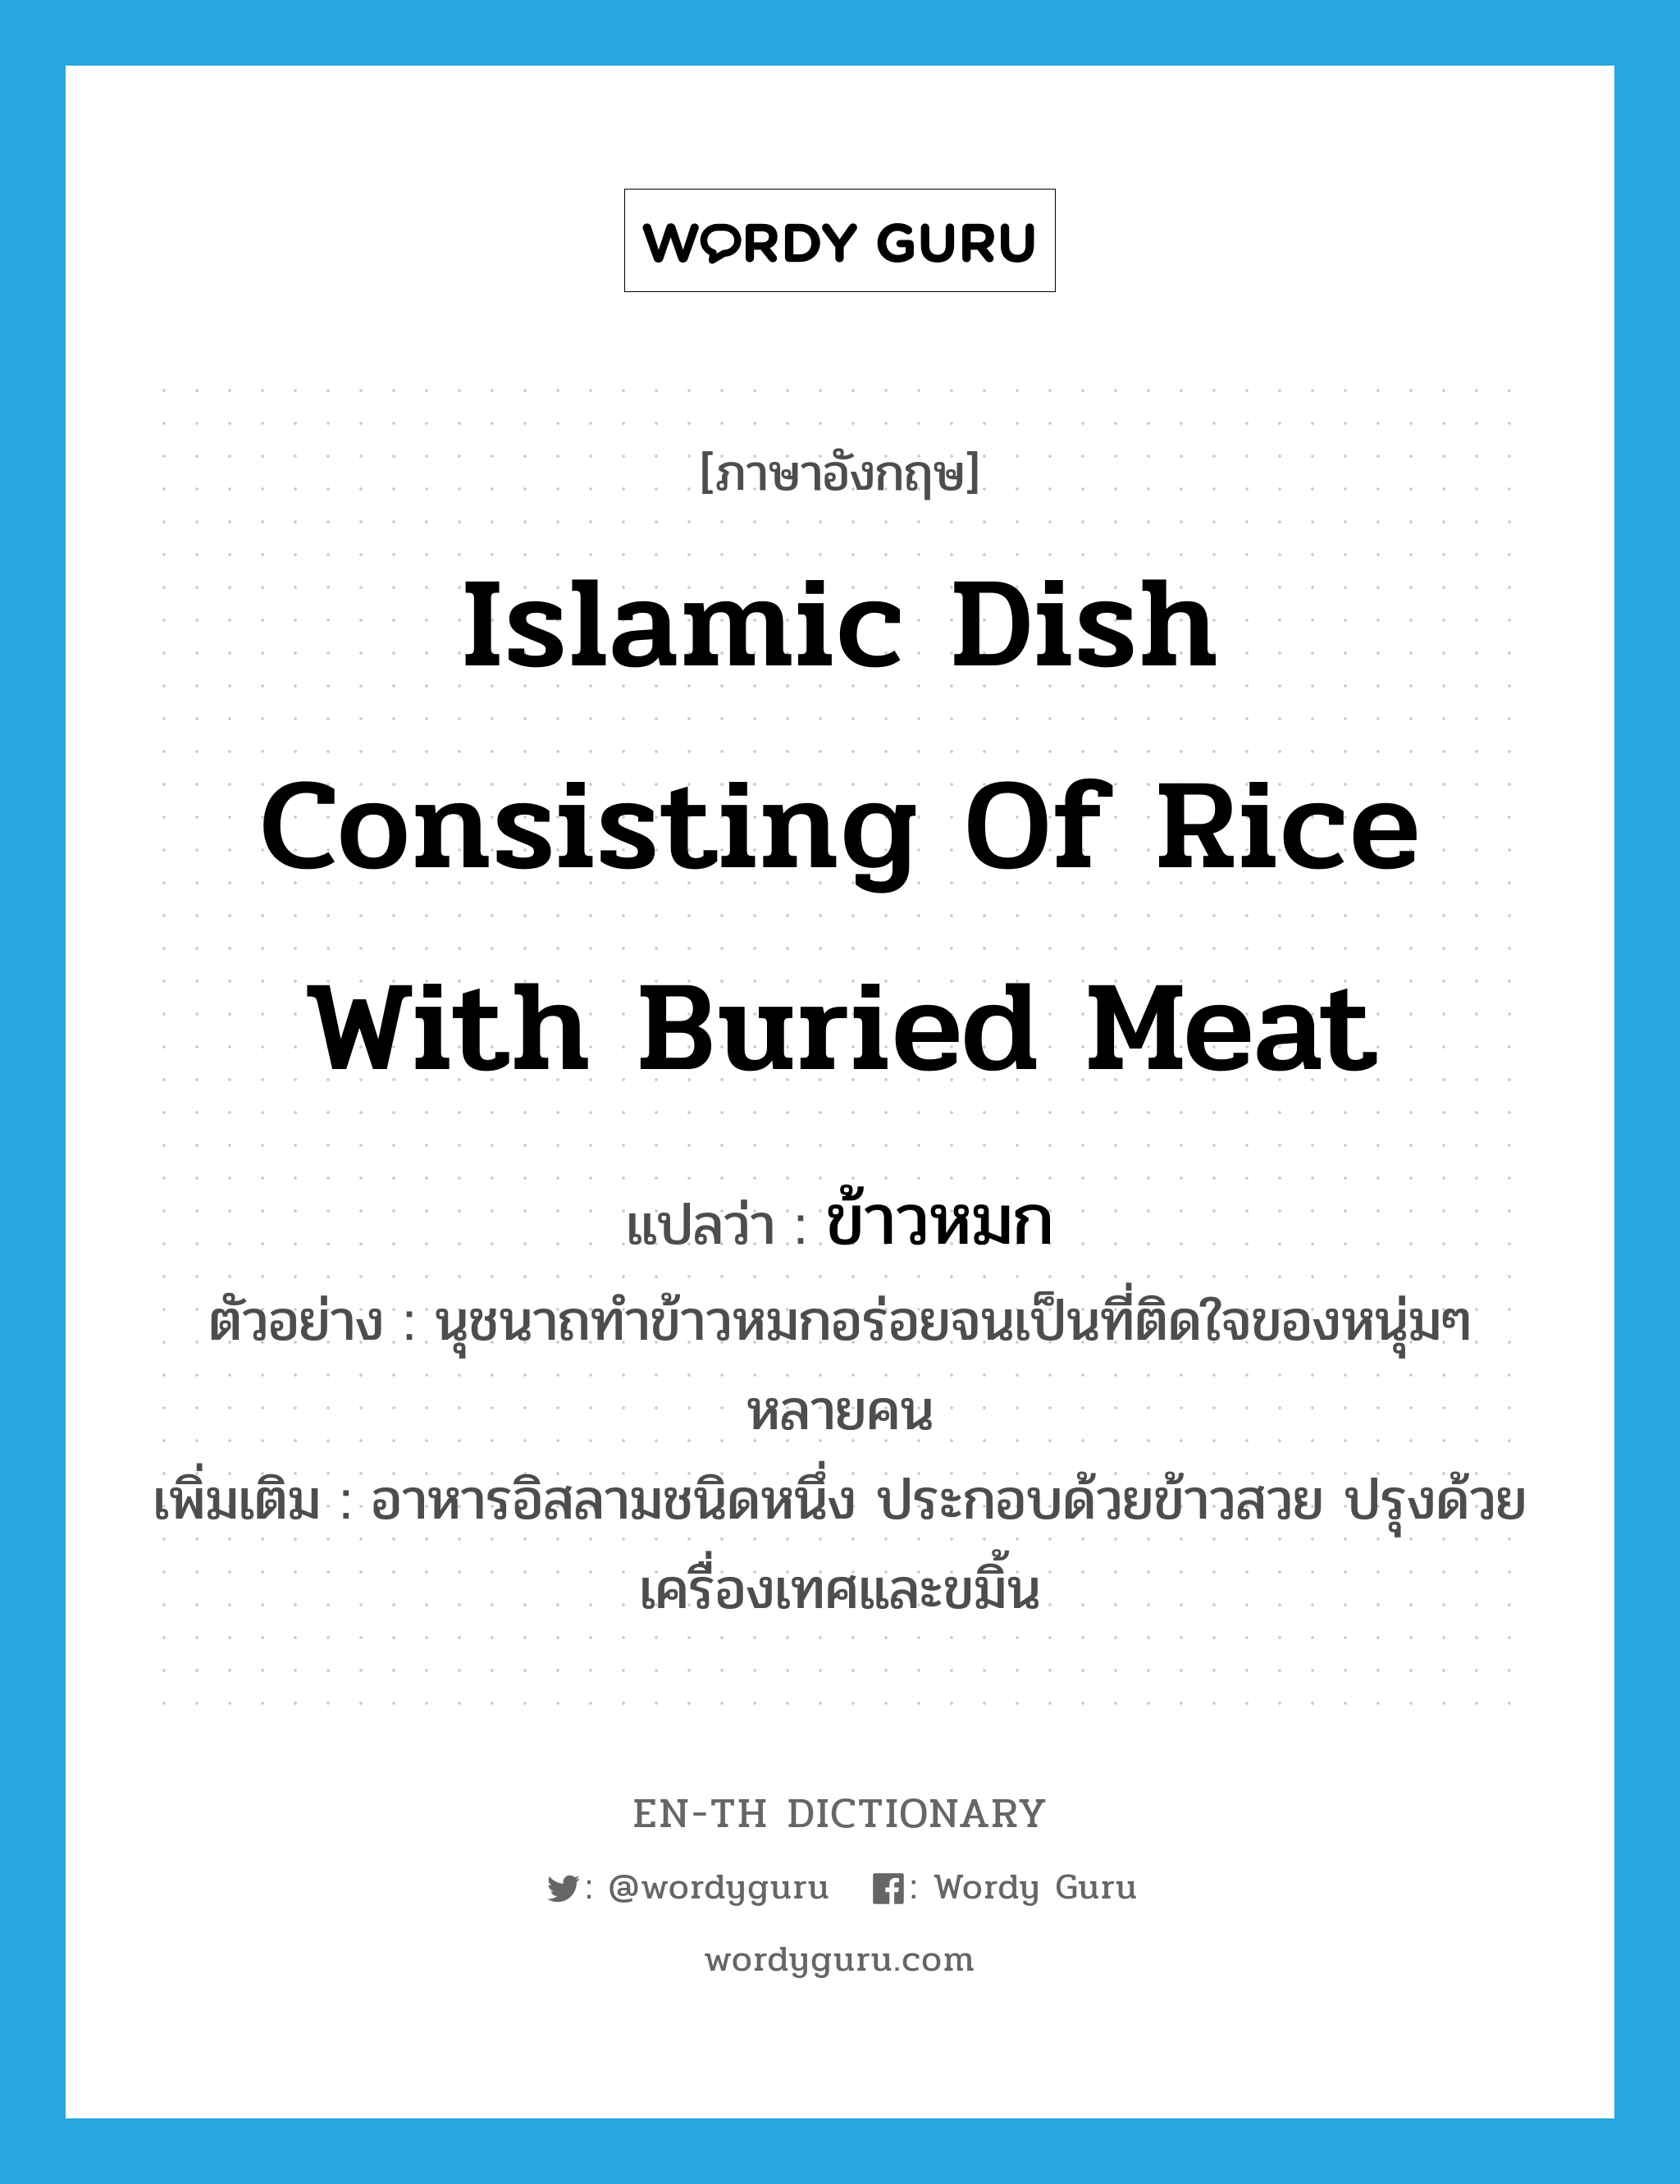 ข้าวหมก ภาษาอังกฤษ?, คำศัพท์ภาษาอังกฤษ ข้าวหมก แปลว่า Islamic dish consisting of rice with buried meat ประเภท N ตัวอย่าง นุชนาถทำข้าวหมกอร่อยจนเป็นที่ติดใจของหนุ่มๆ หลายคน เพิ่มเติม อาหารอิสลามชนิดหนึ่ง ประกอบด้วยข้าวสวย ปรุงด้วยเครื่องเทศและขมิ้น หมวด N